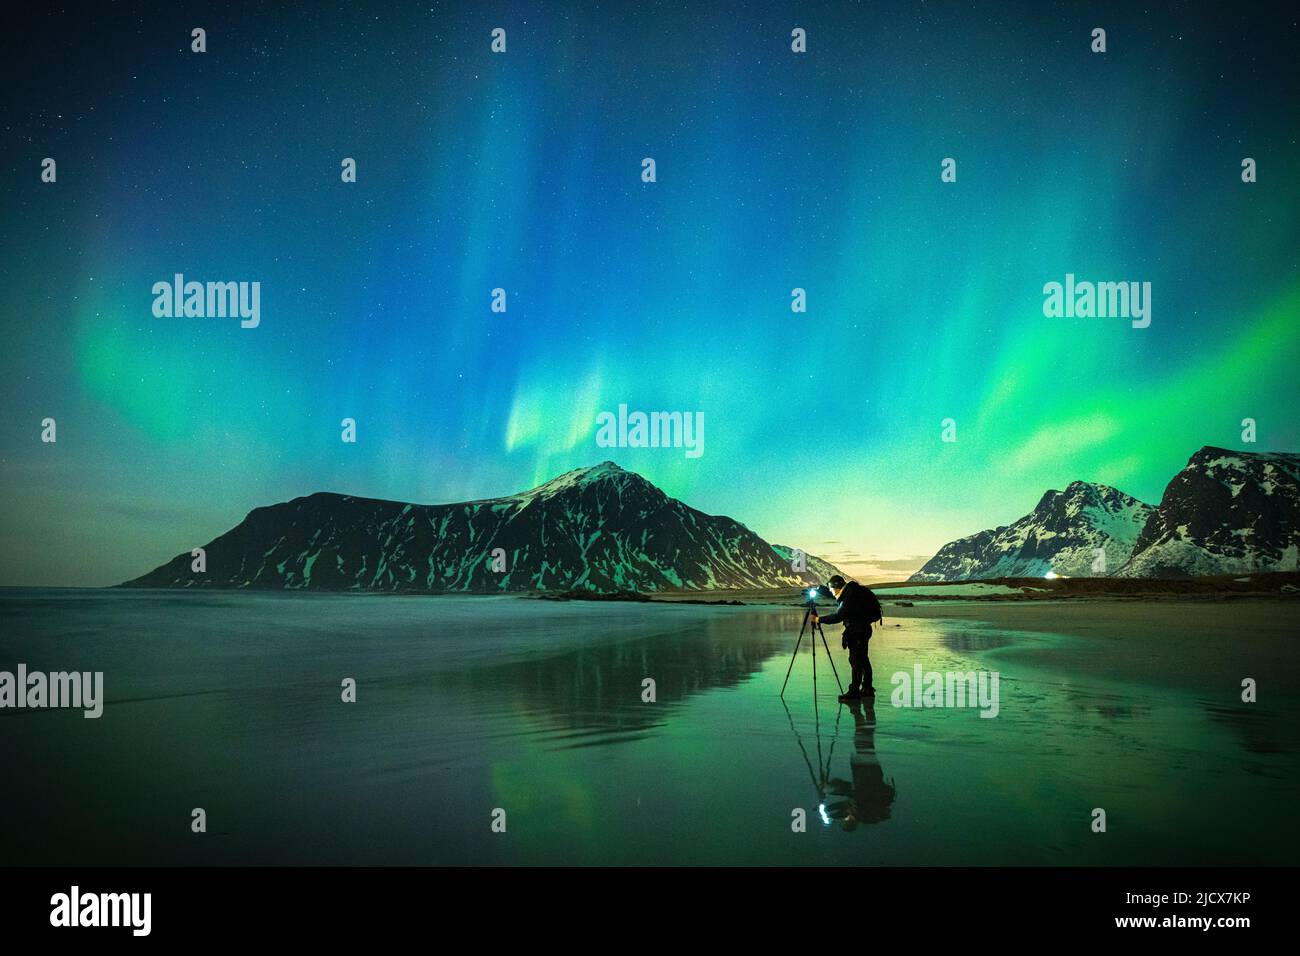 Personne photographiant le ciel lumineux pendant l'aurore Borealis (aurores boréales) debout sur la plage de Skagsanden, îles Lofoten, Norvège, Scandinavie Banque D'Images